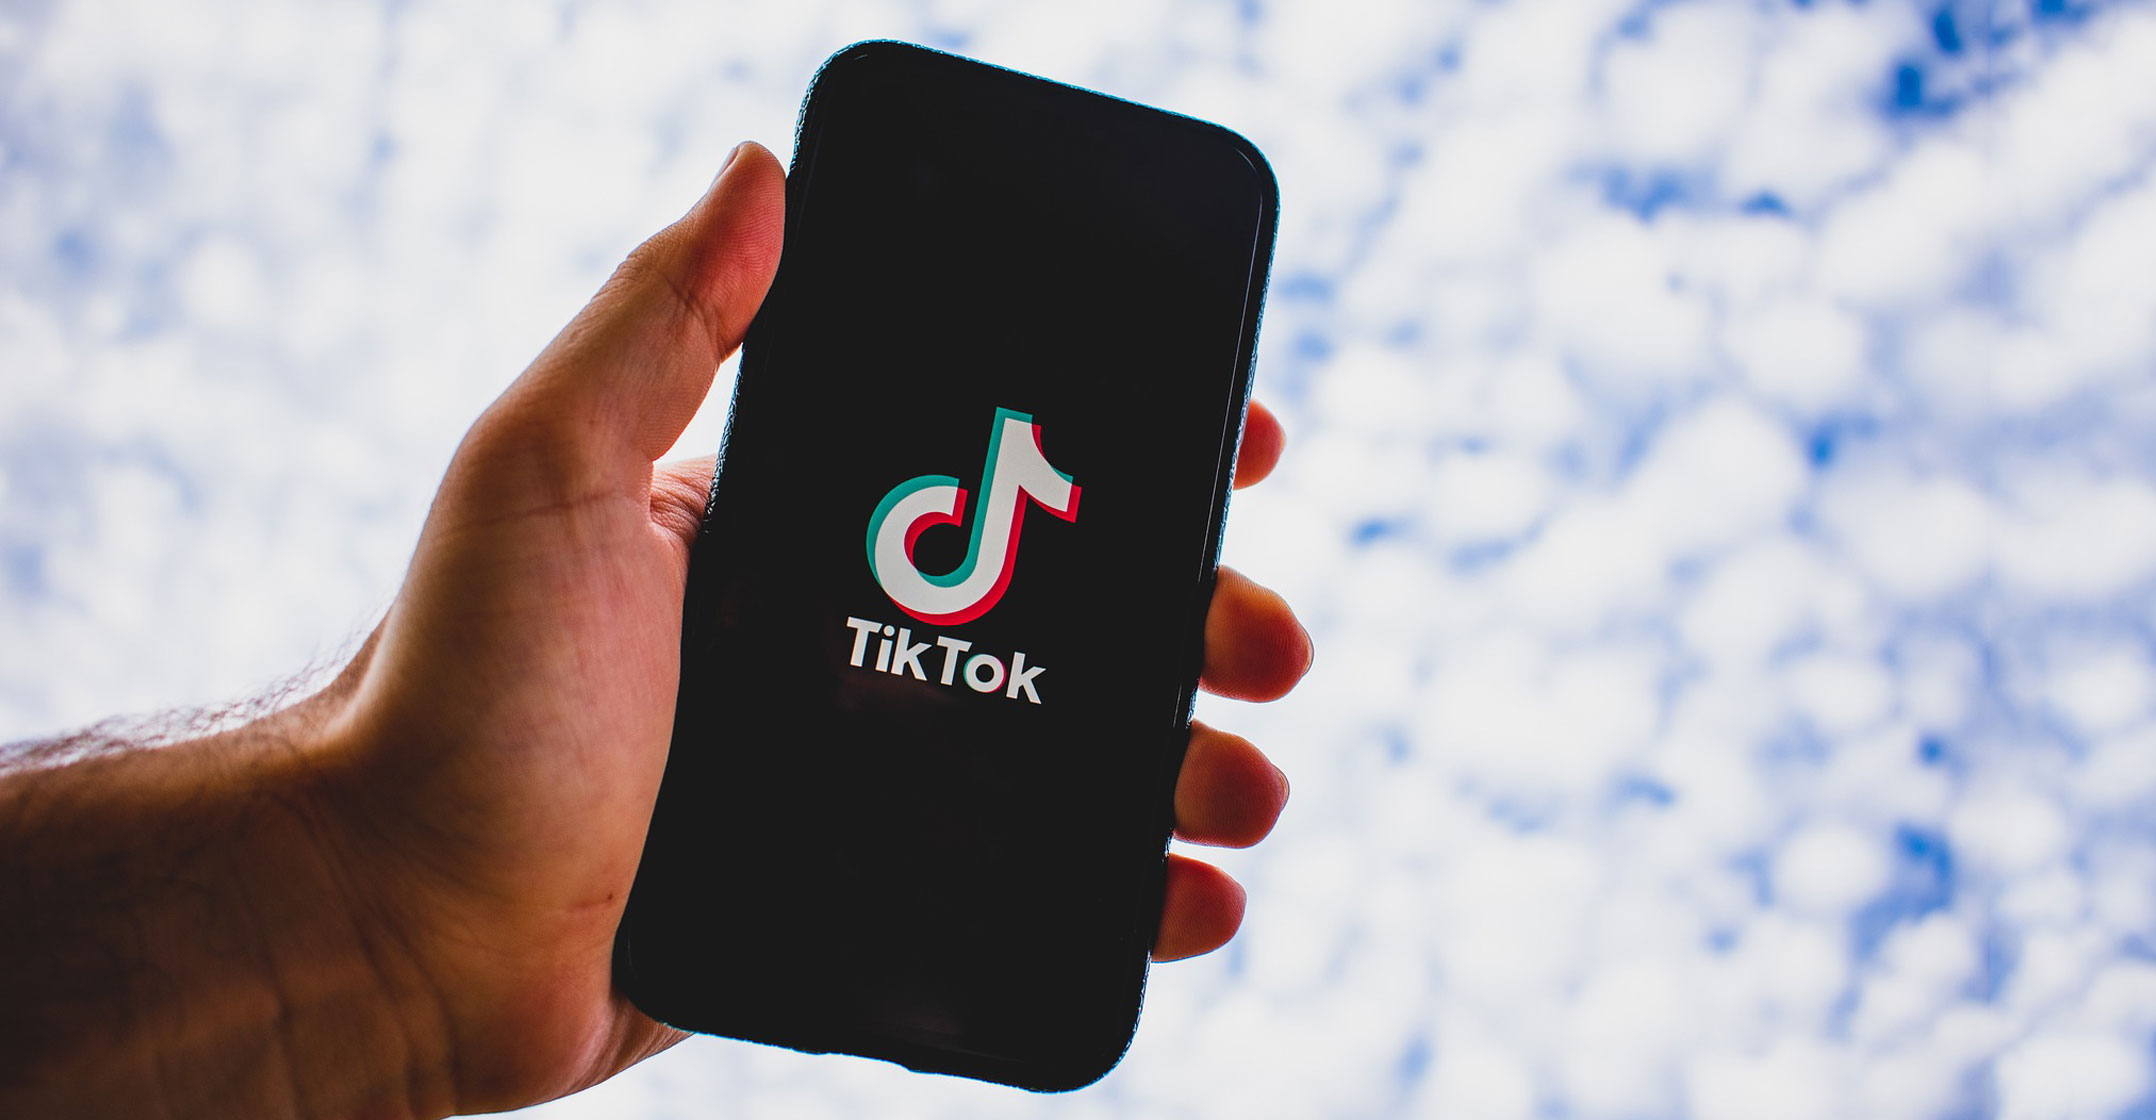 Is TikTok Safe To Use?